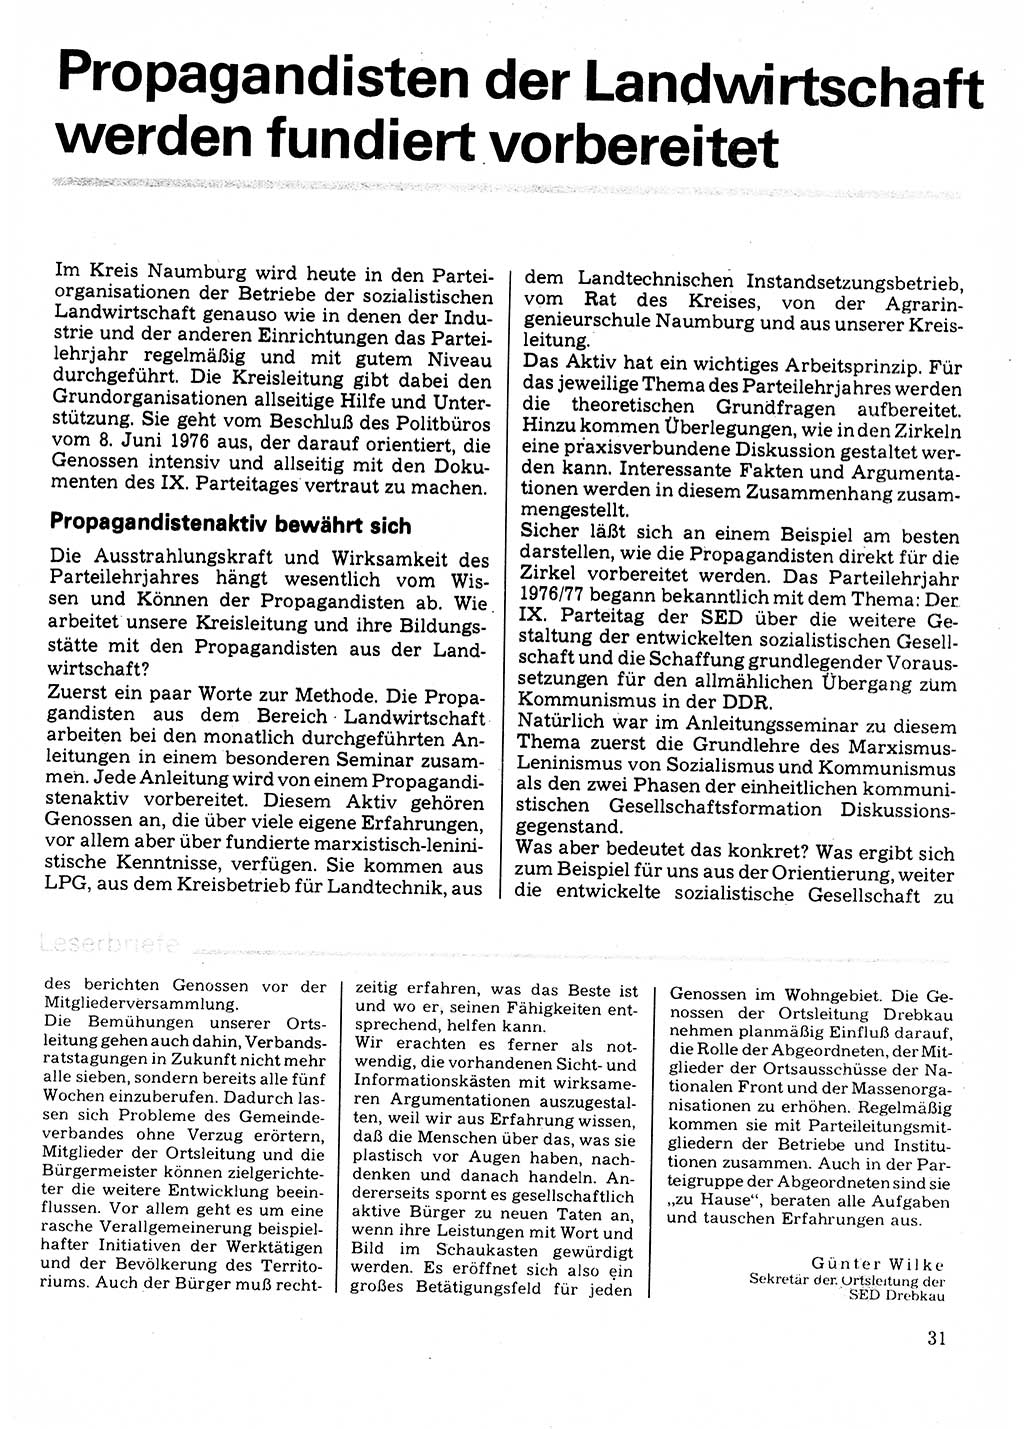 Neuer Weg (NW), Organ des Zentralkomitees (ZK) der SED (Sozialistische Einheitspartei Deutschlands) für Fragen des Parteilebens, 32. Jahrgang [Deutsche Demokratische Republik (DDR)] 1977, Seite 31 (NW ZK SED DDR 1977, S. 31)